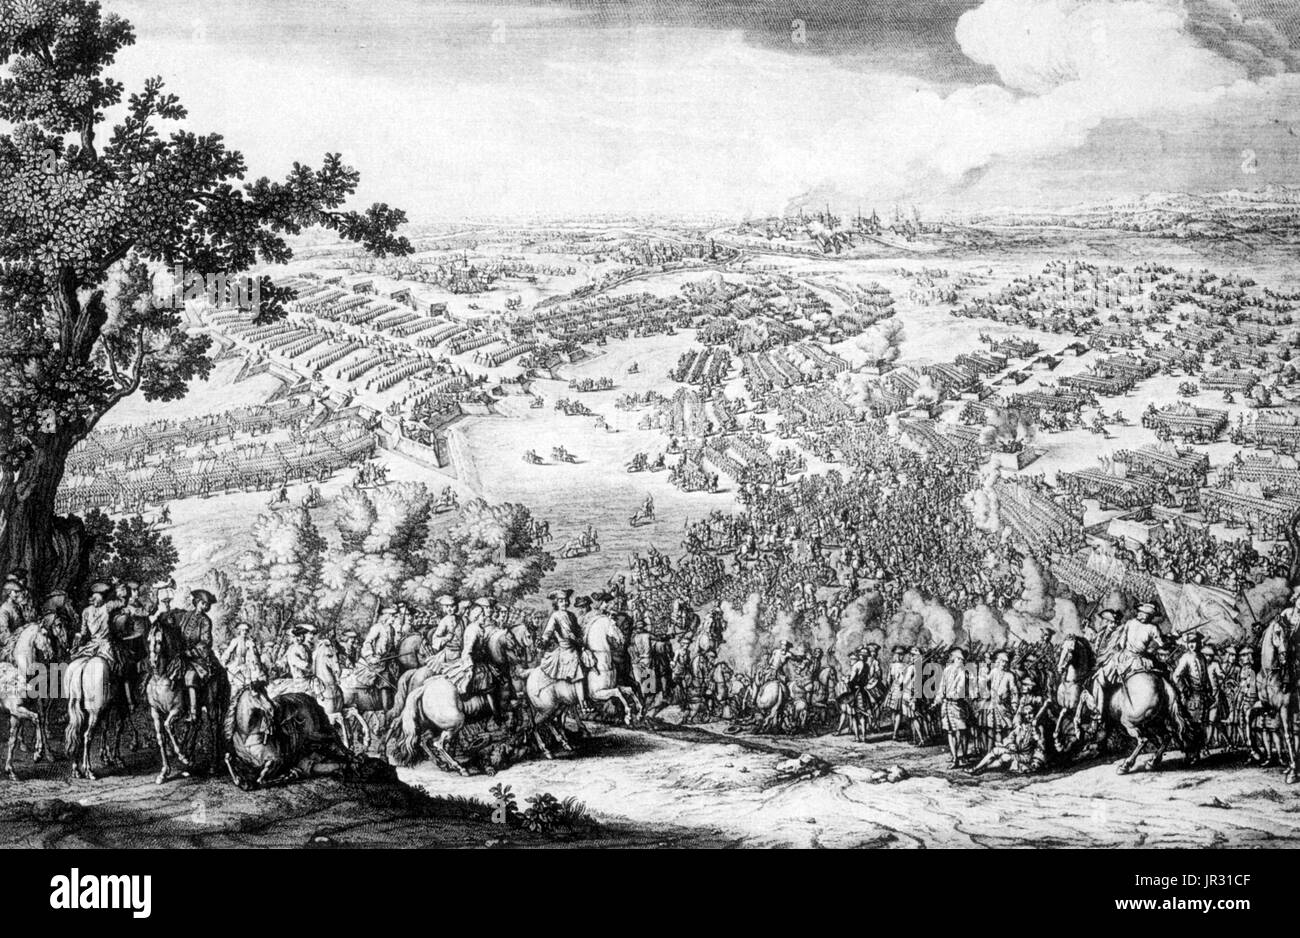 La bataille de Poltava, le 8 juillet 1709 a été la victoire décisive de Pierre I de Russie sur les forces suédoises sous le maréchal Carl Gustav Rehnskiöld, dans l'une des batailles de la Grande Guerre du Nord. Les Suédois de haut rang capturé pendant la bataille inclus le maréchal Rehnskiöld, généraux de Schlippenbach, Stackelberg, Hamilton et Prince Maximilian Emanuel. Peter a organisé un banquet commémoratif en deux grandes tentes érigé sur le champ de bataille. La bataille porte également une importance majeure dans l'histoire nationale de l'Ukraine, comme Zaporizhian d'Hetman Ivan Mazepa hôte verso avec les Suédois, cherchant à créer un Banque D'Images